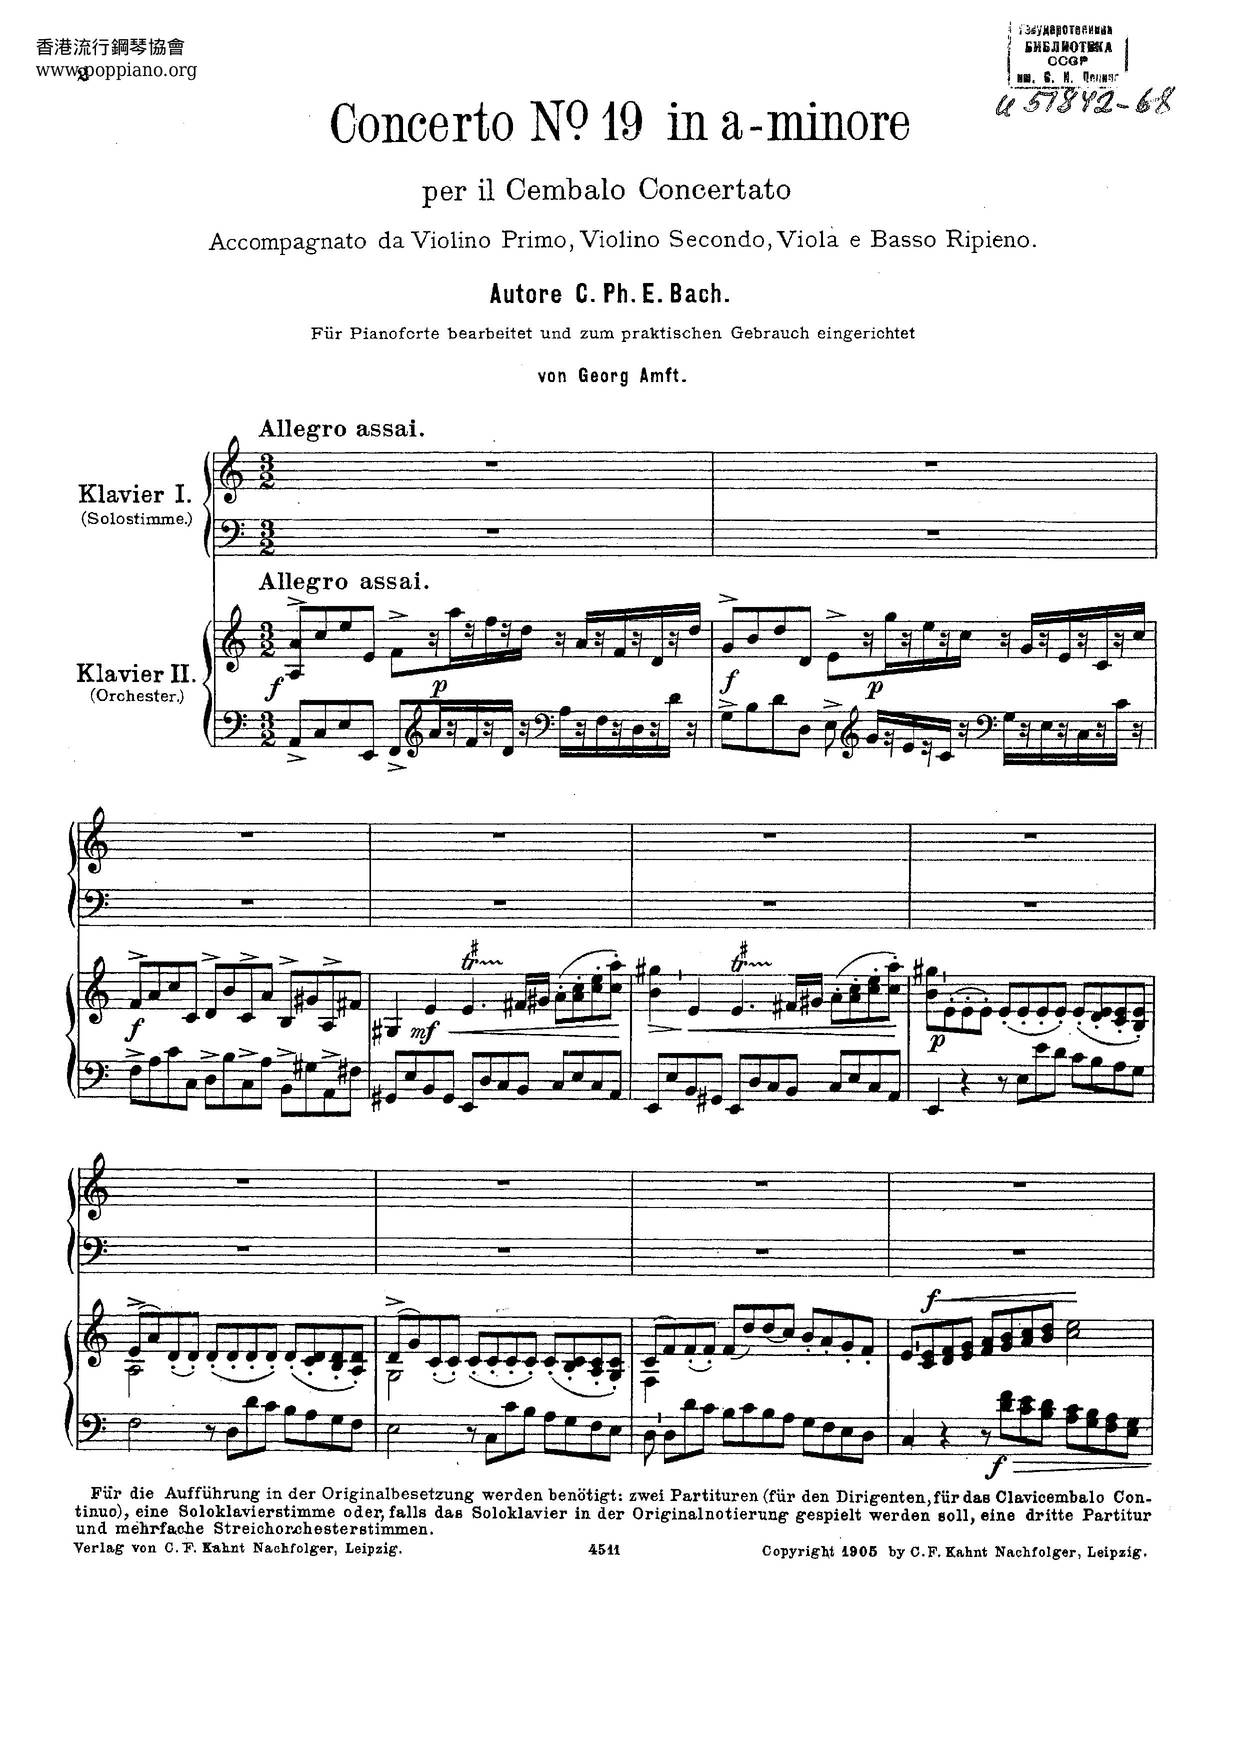 Harpsichord Concerto In A Minor, H.430 Score